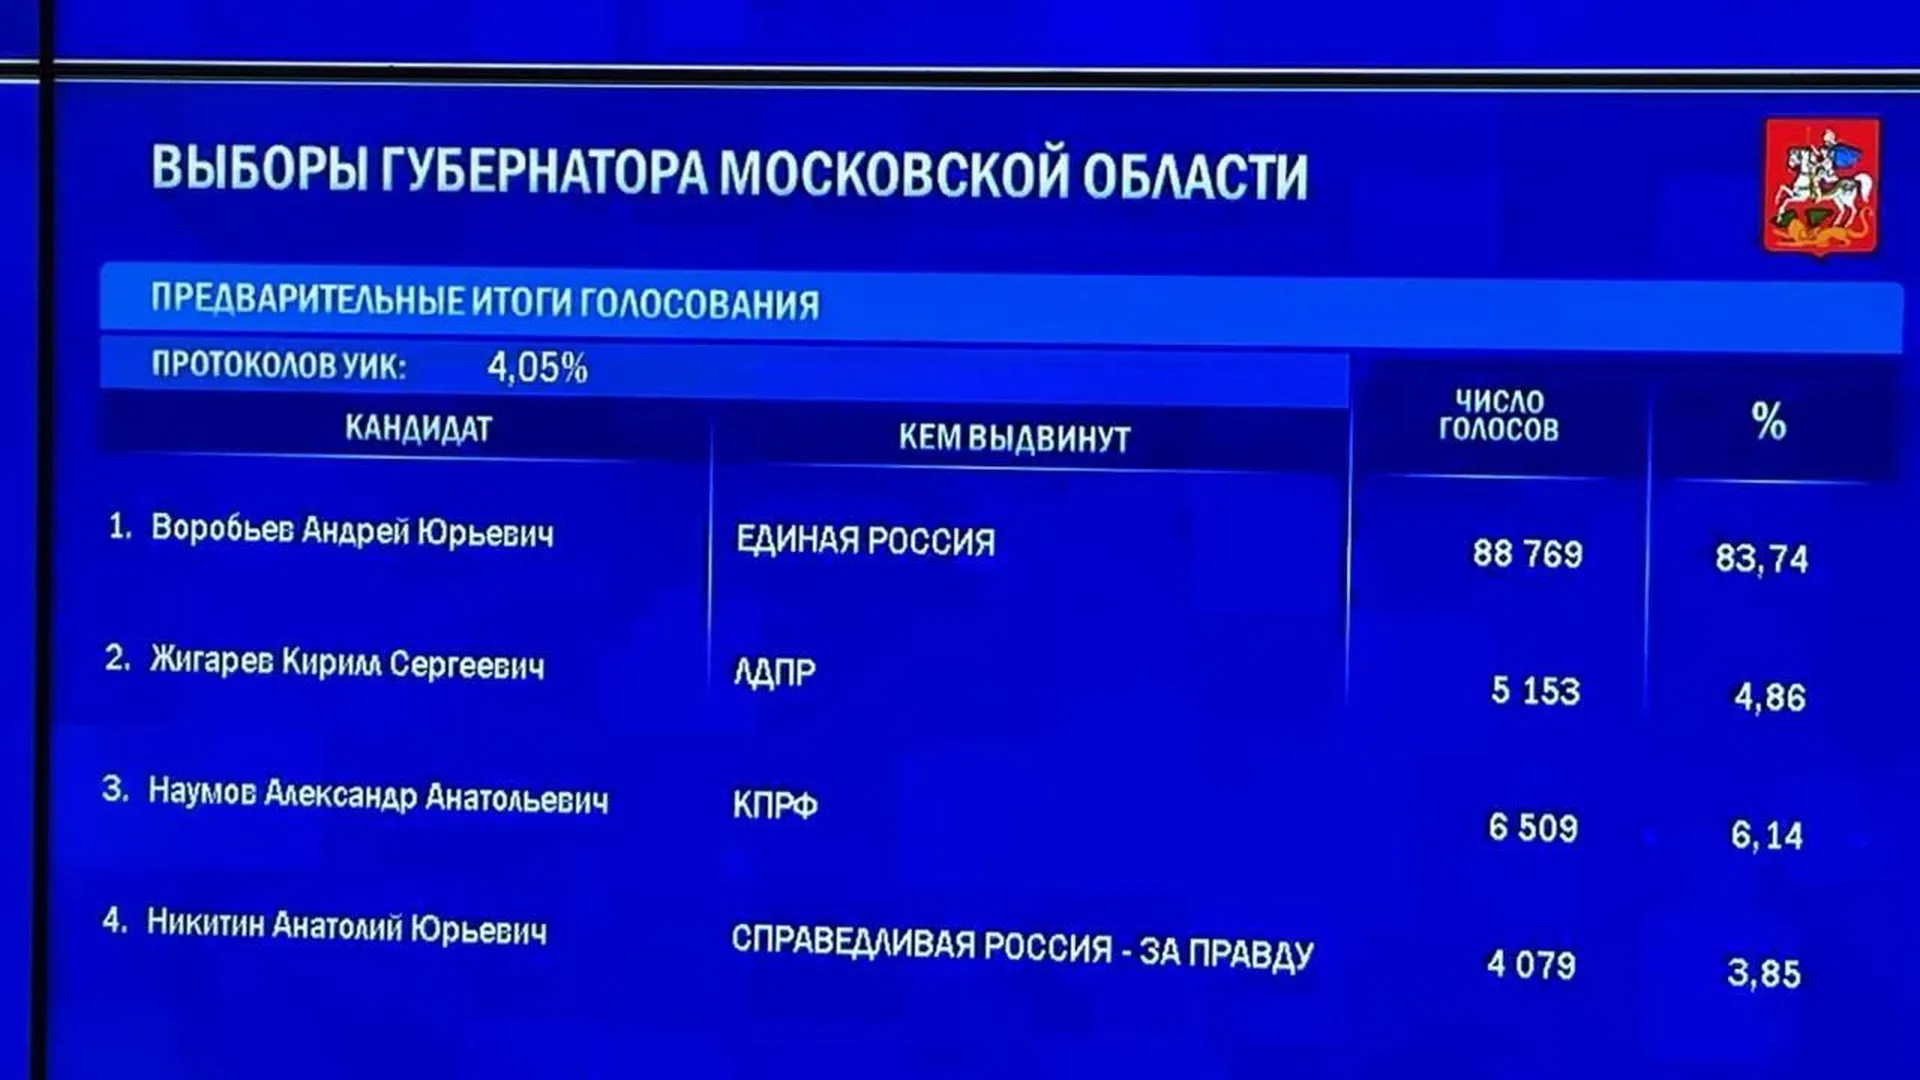 Появились первые данные по предварительным итогам голосования в Подмосковье